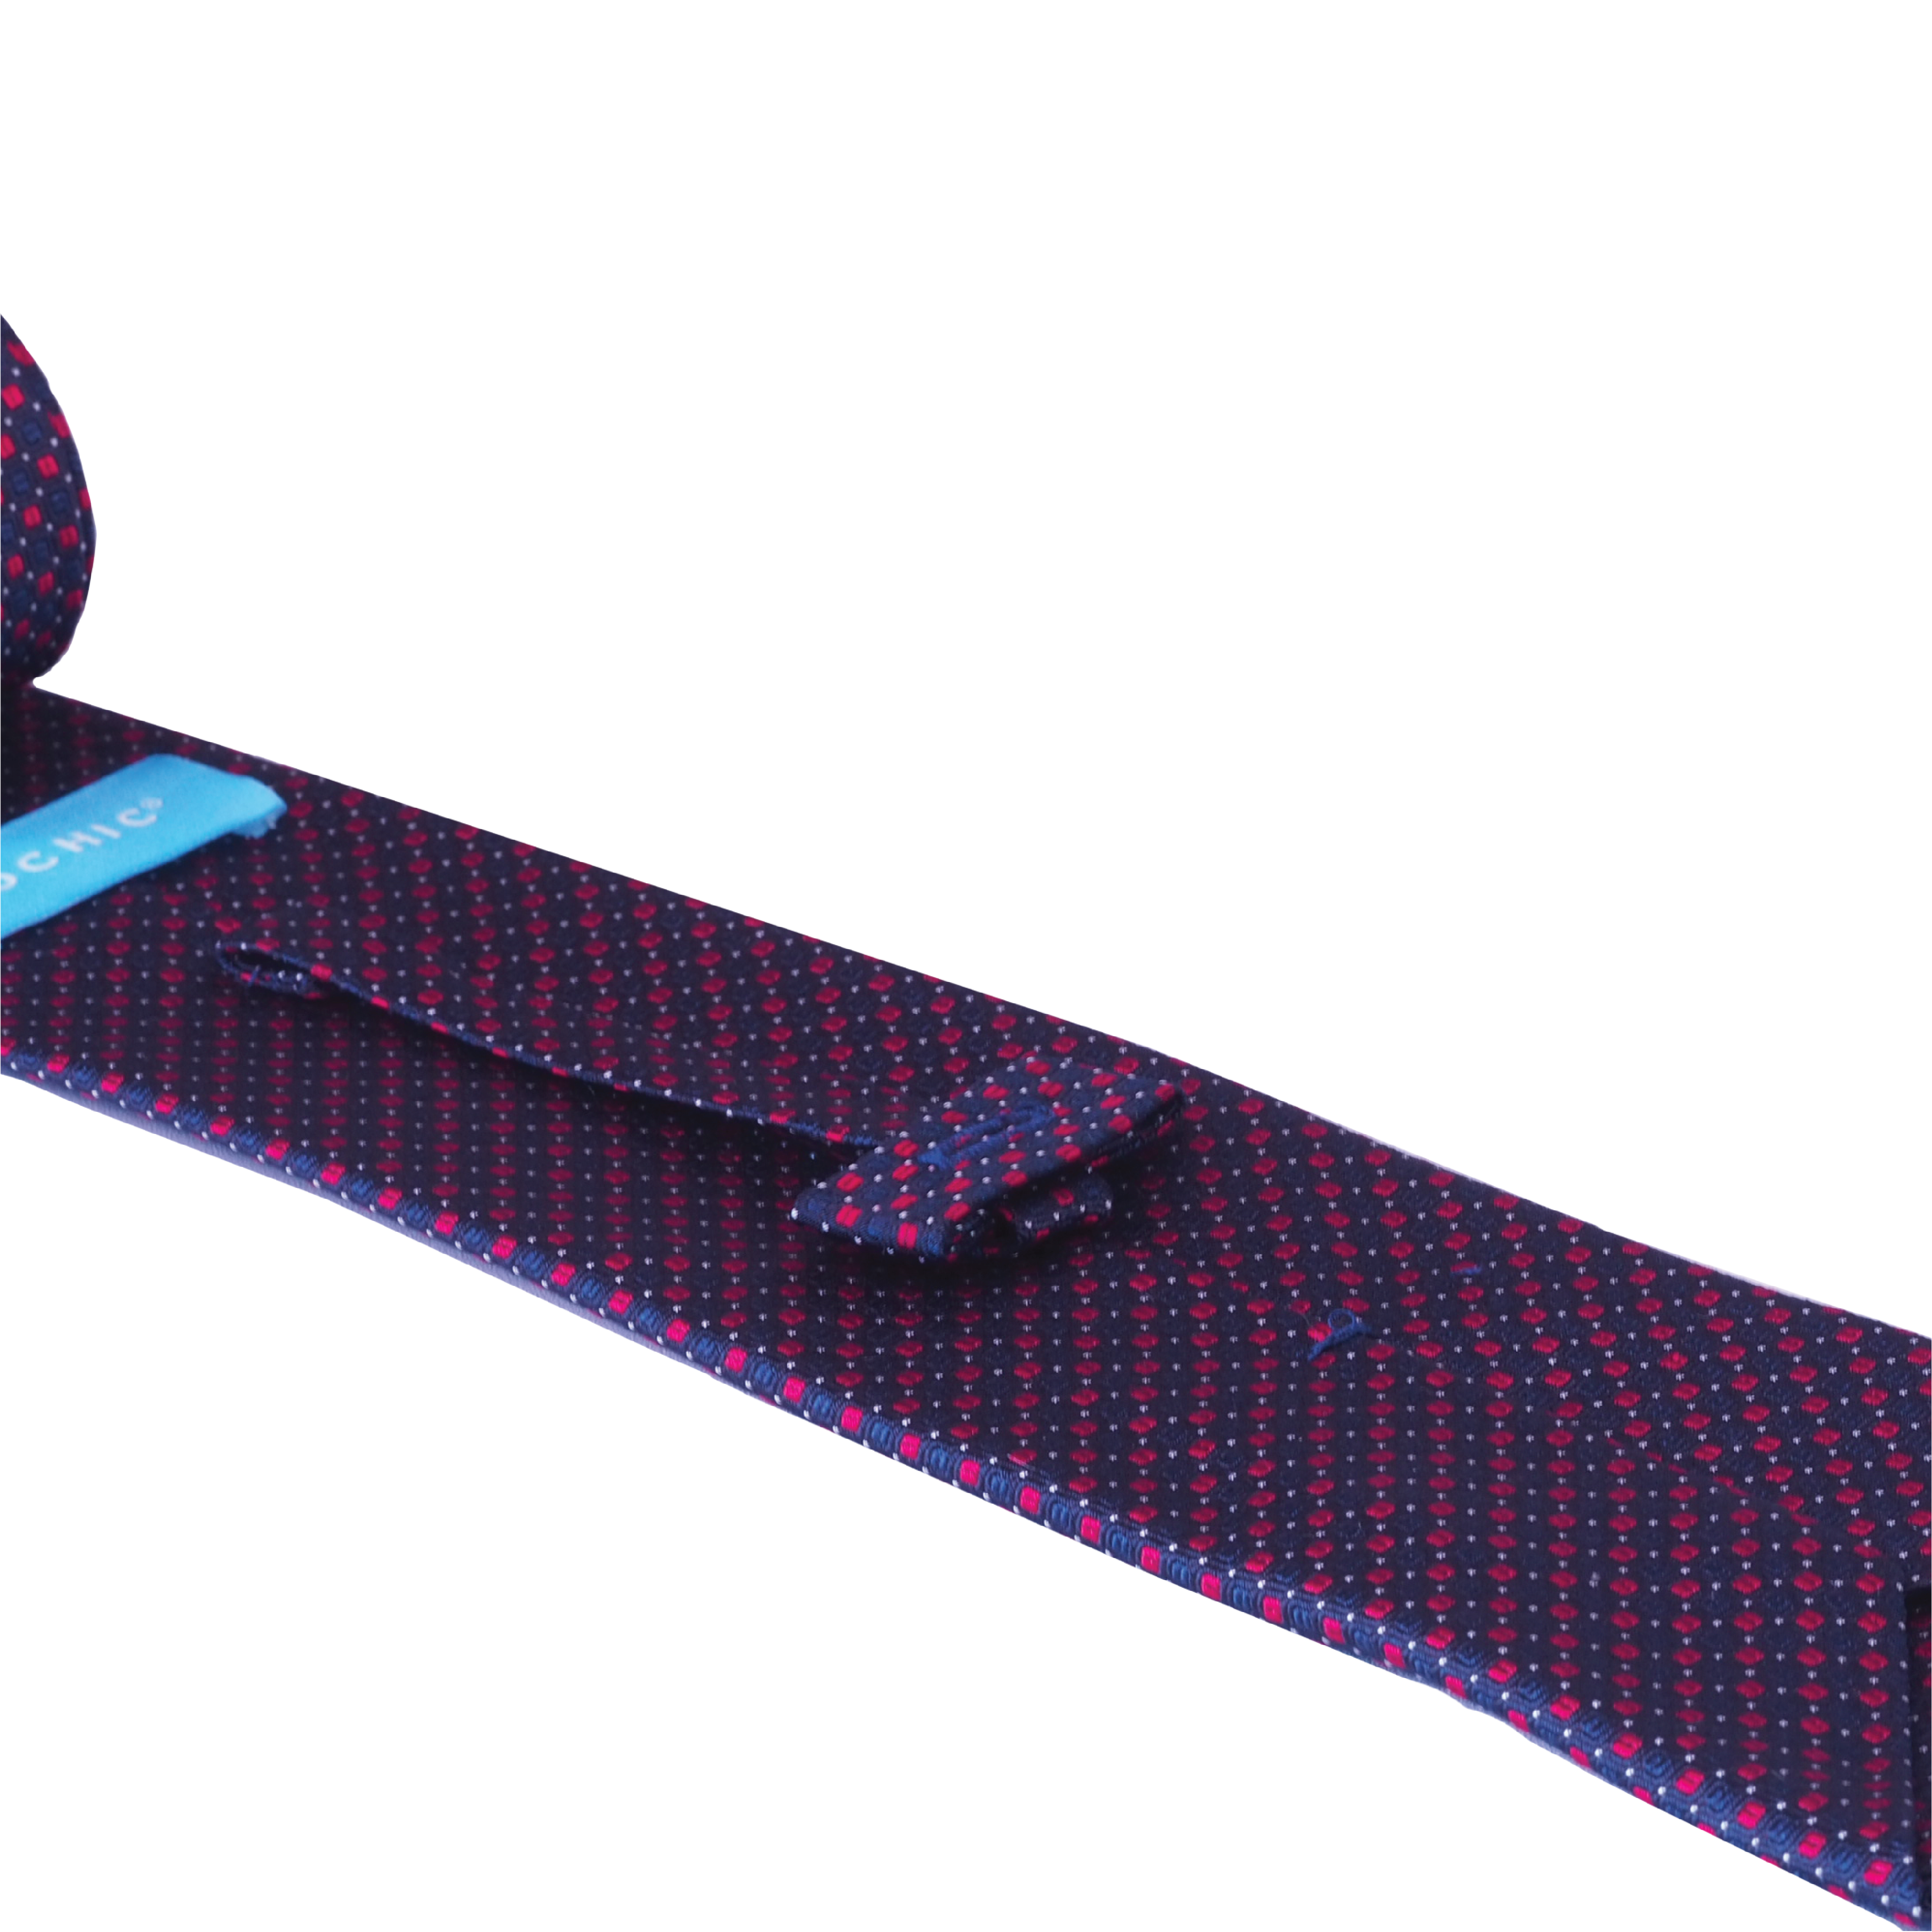 Crimson Chic Classic Tie (100% Silk)